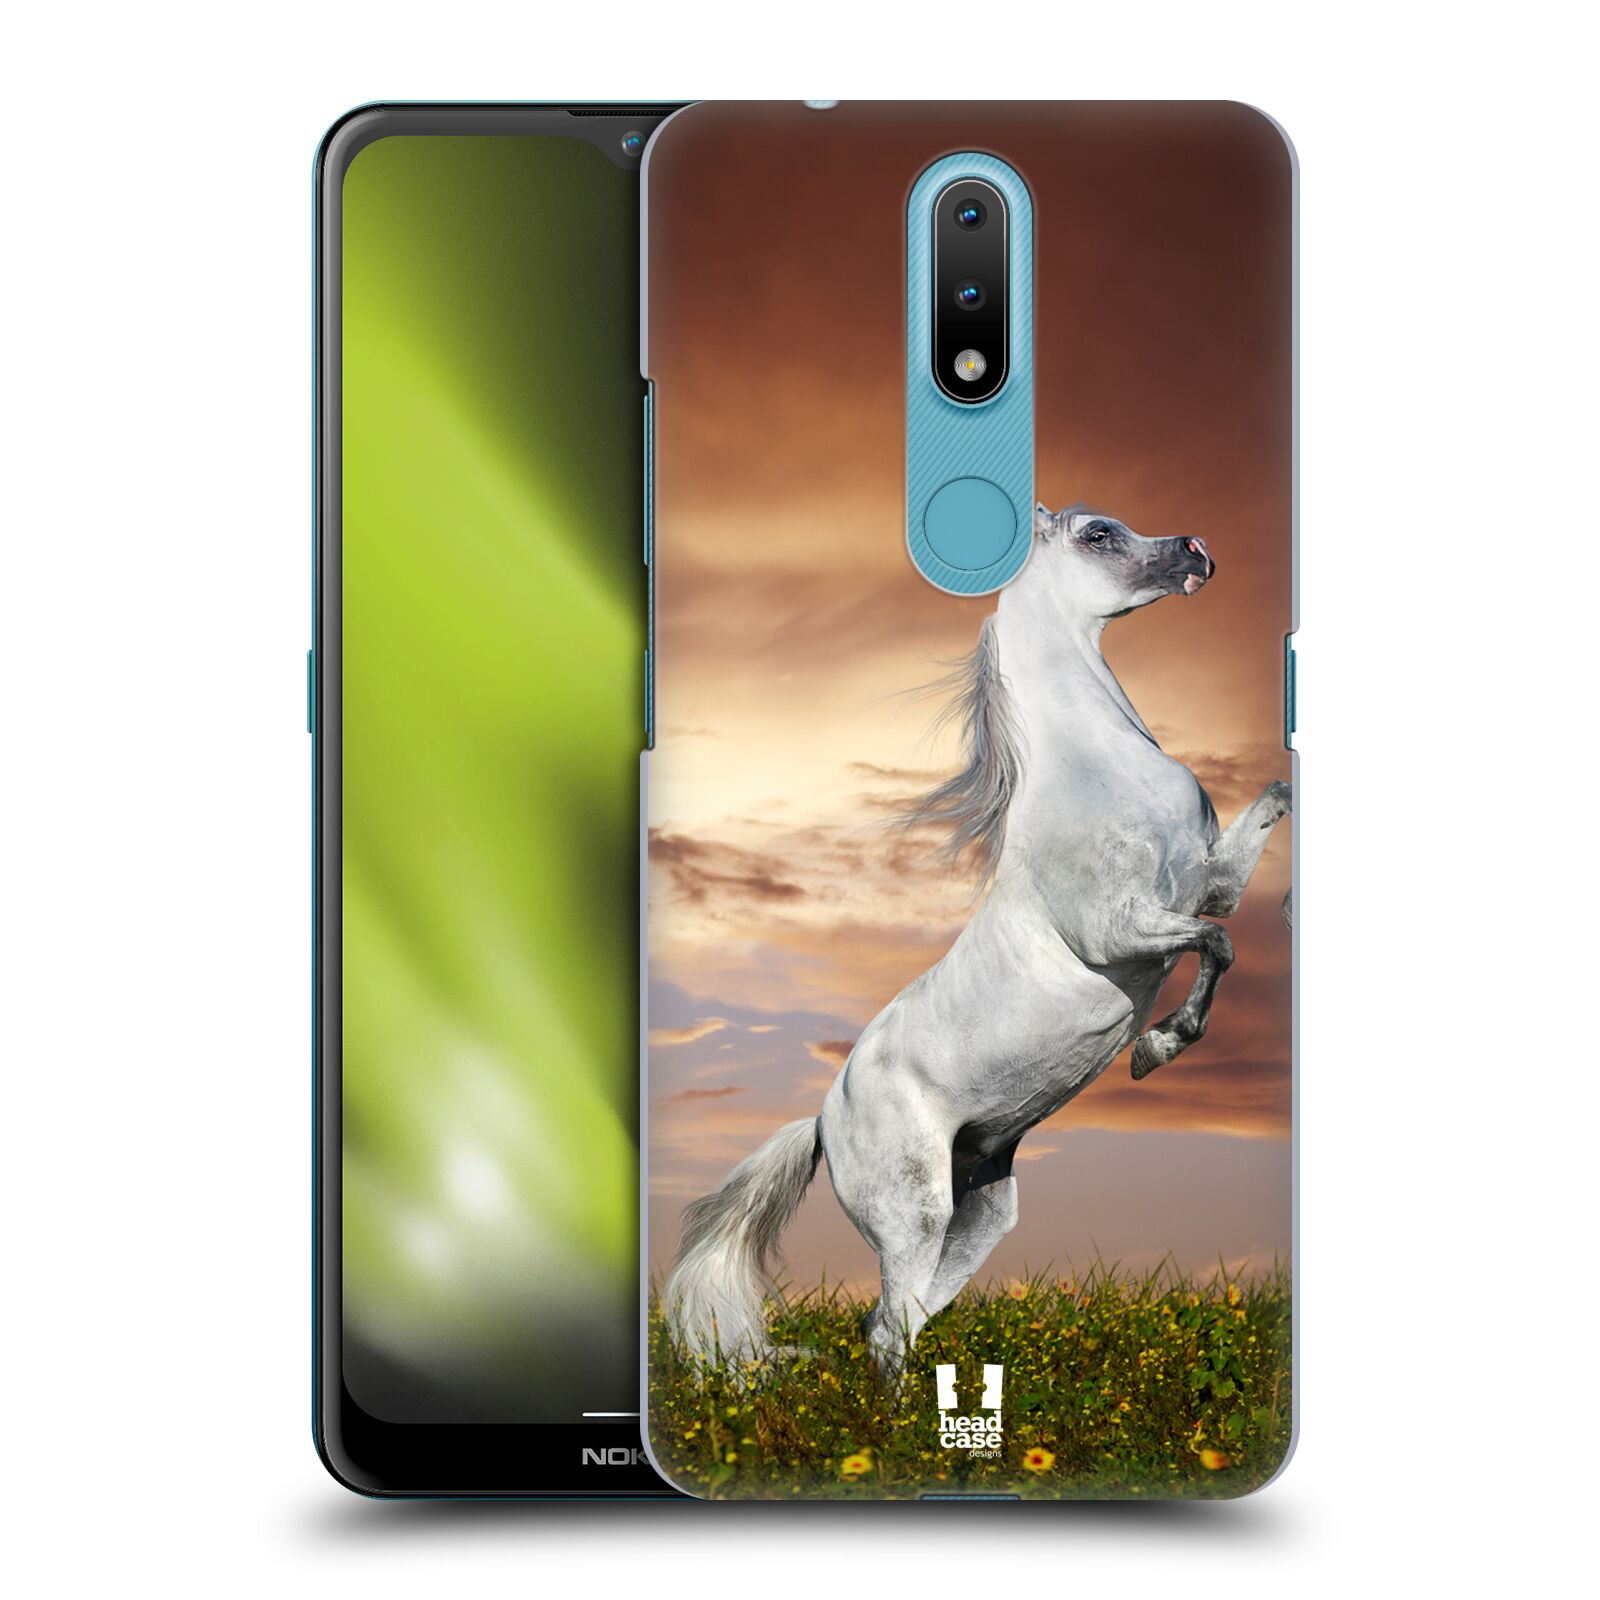 Zadní obal pro mobil Nokia 2.4 - HEAD CASE - Svět zvířat divoký kůň